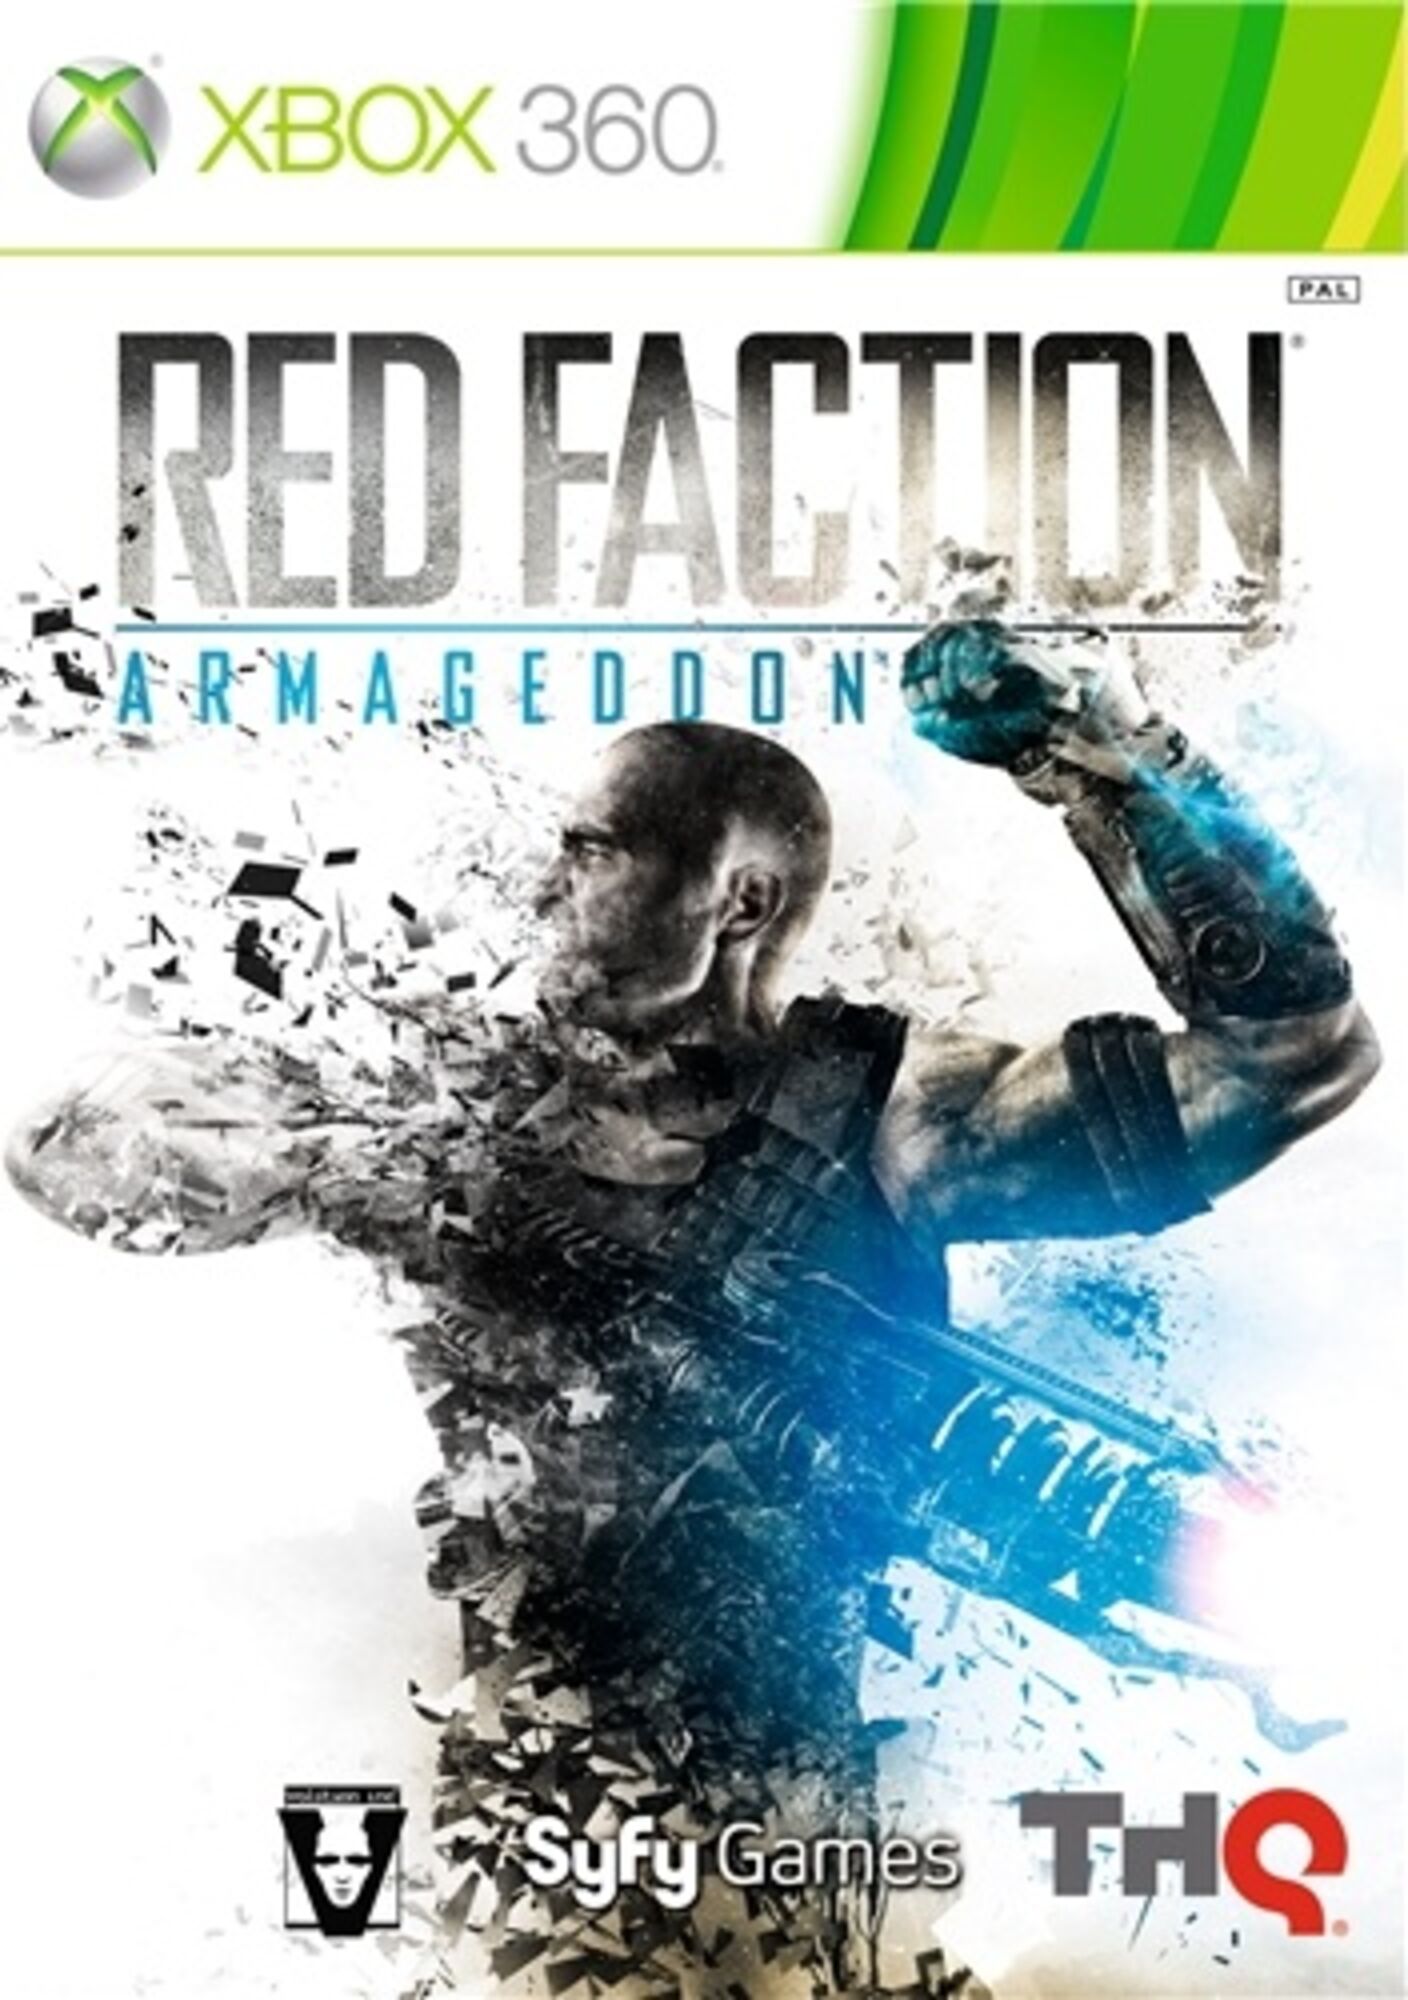 download free red faction armageddon commando & recon edition